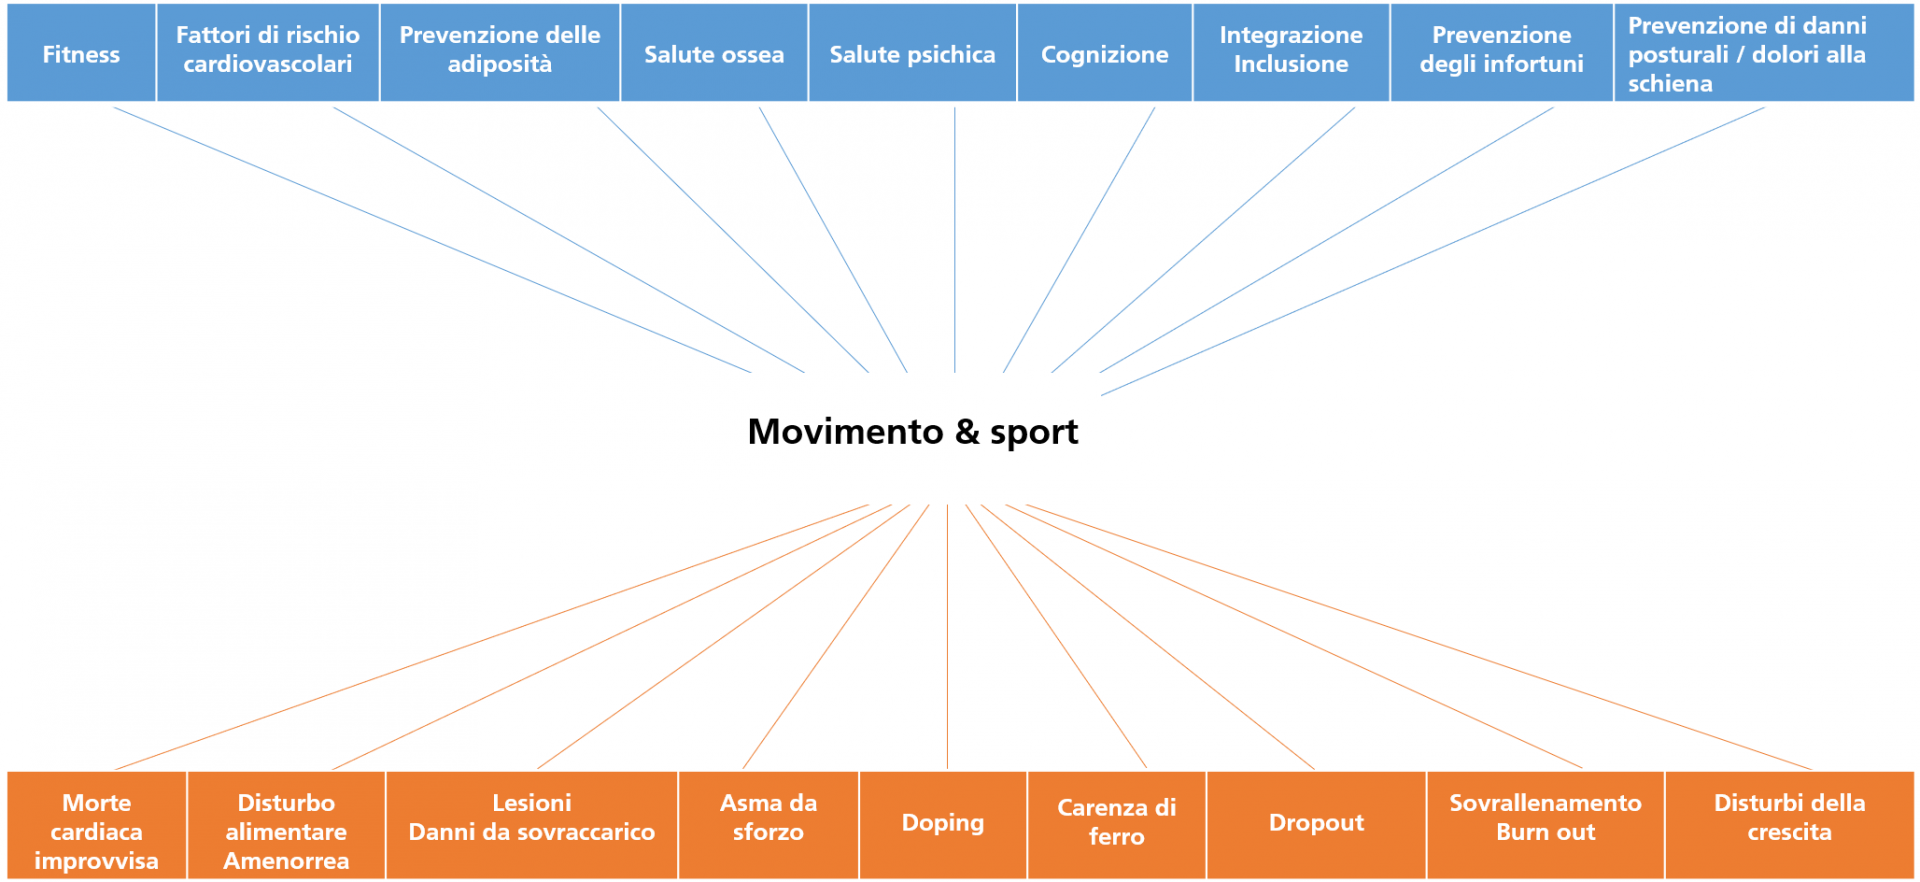 Effetti positivi e negativi del movimento e dello sport sulla salute di bambini e giovani. (Fonte: Menrath et al., 2021)